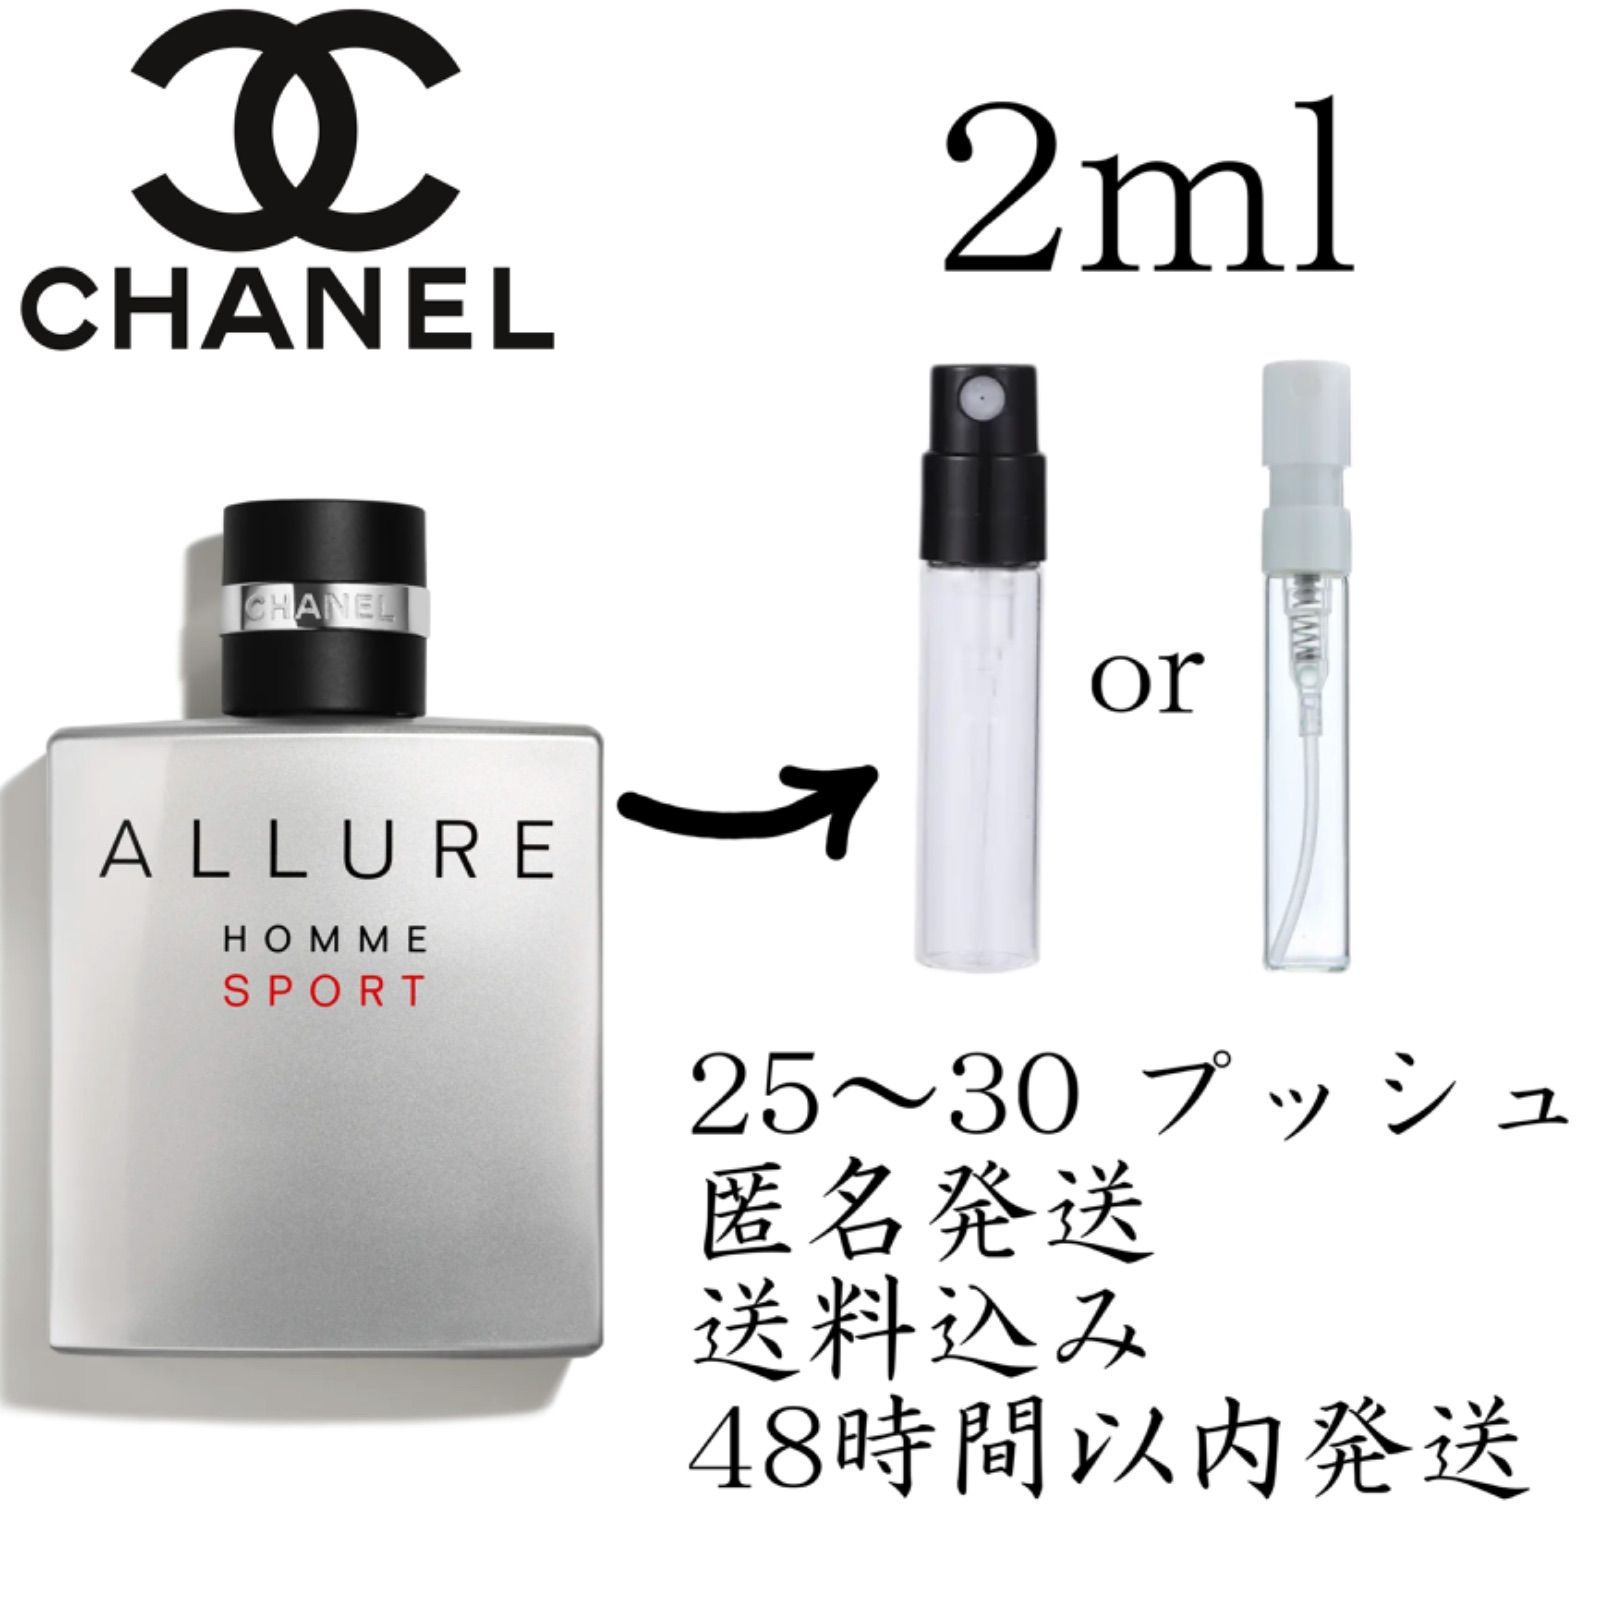 香水 シャネル アリュールオムスポーツ2ml お試し サンプル - 香水(男性用)